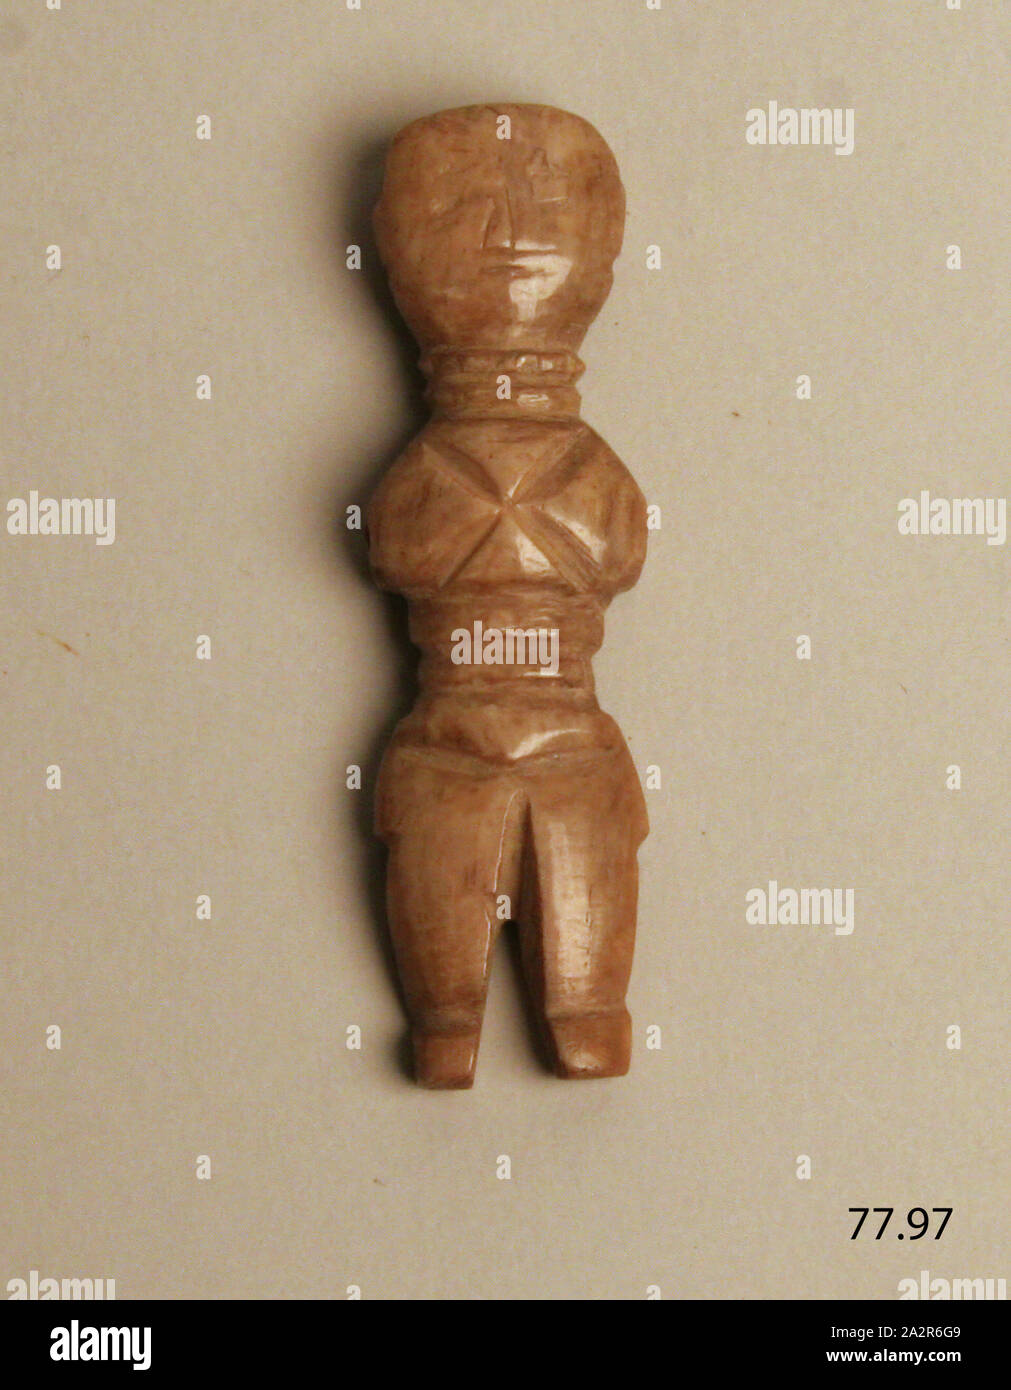 Le copte, l'Égyptien, l'homme stylisé, 300/600 AD, l'os, 3 1/4 x 7/8 x 7/16 in. (8.26 x 2.21 x 1.12 cm Banque D'Images